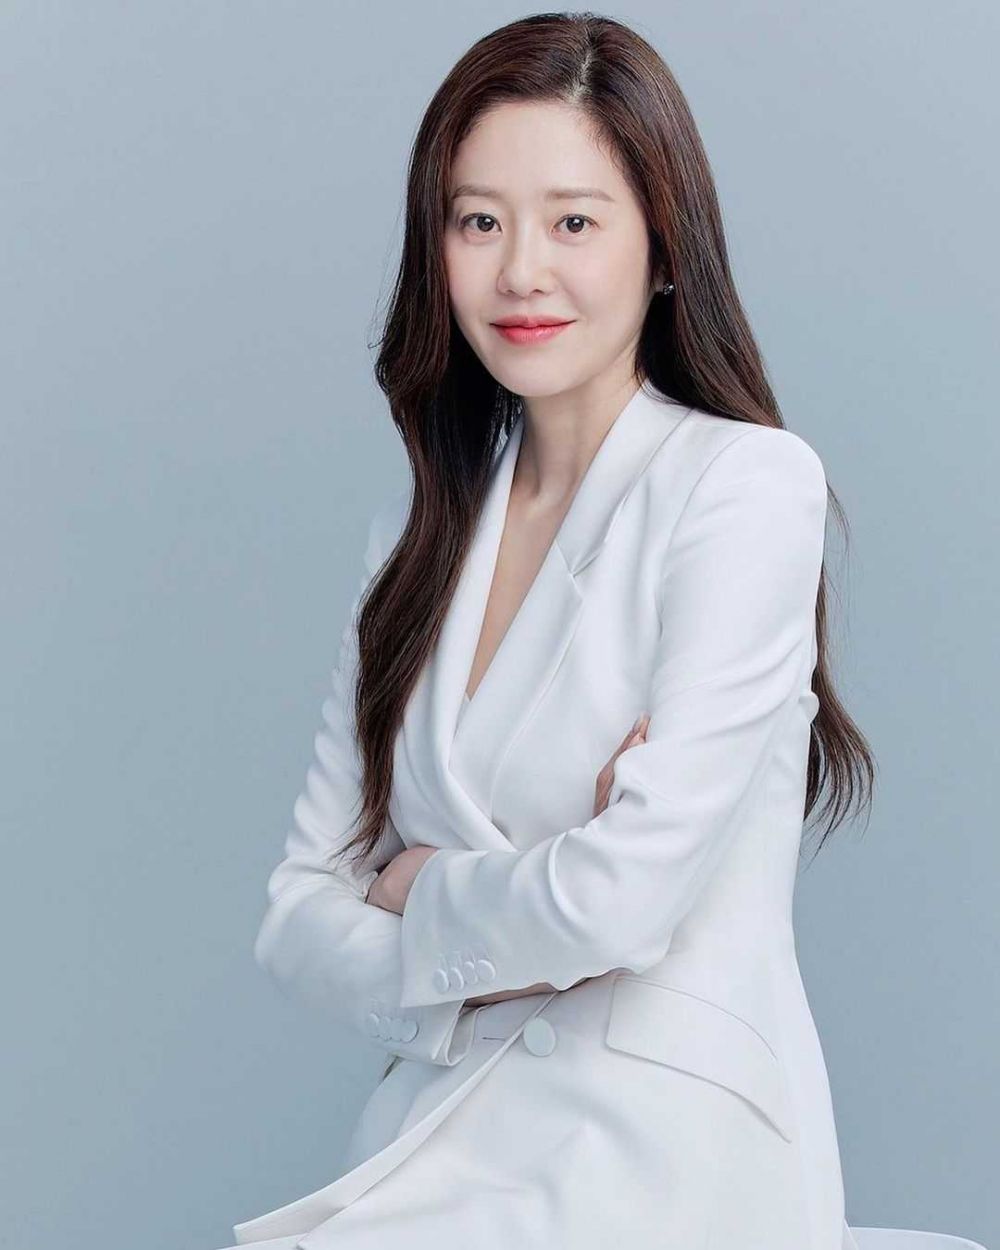 Cuộc sống “làm dâu hào môn” của 2 mỹ nhân hàng đầu Kbiz: Jun Ji Hyun sống như bà hoàng, Go Hyun Jung lấy lại hào quang sau khi thoát khỏi hôn nhân địa ngục - Ảnh 7.